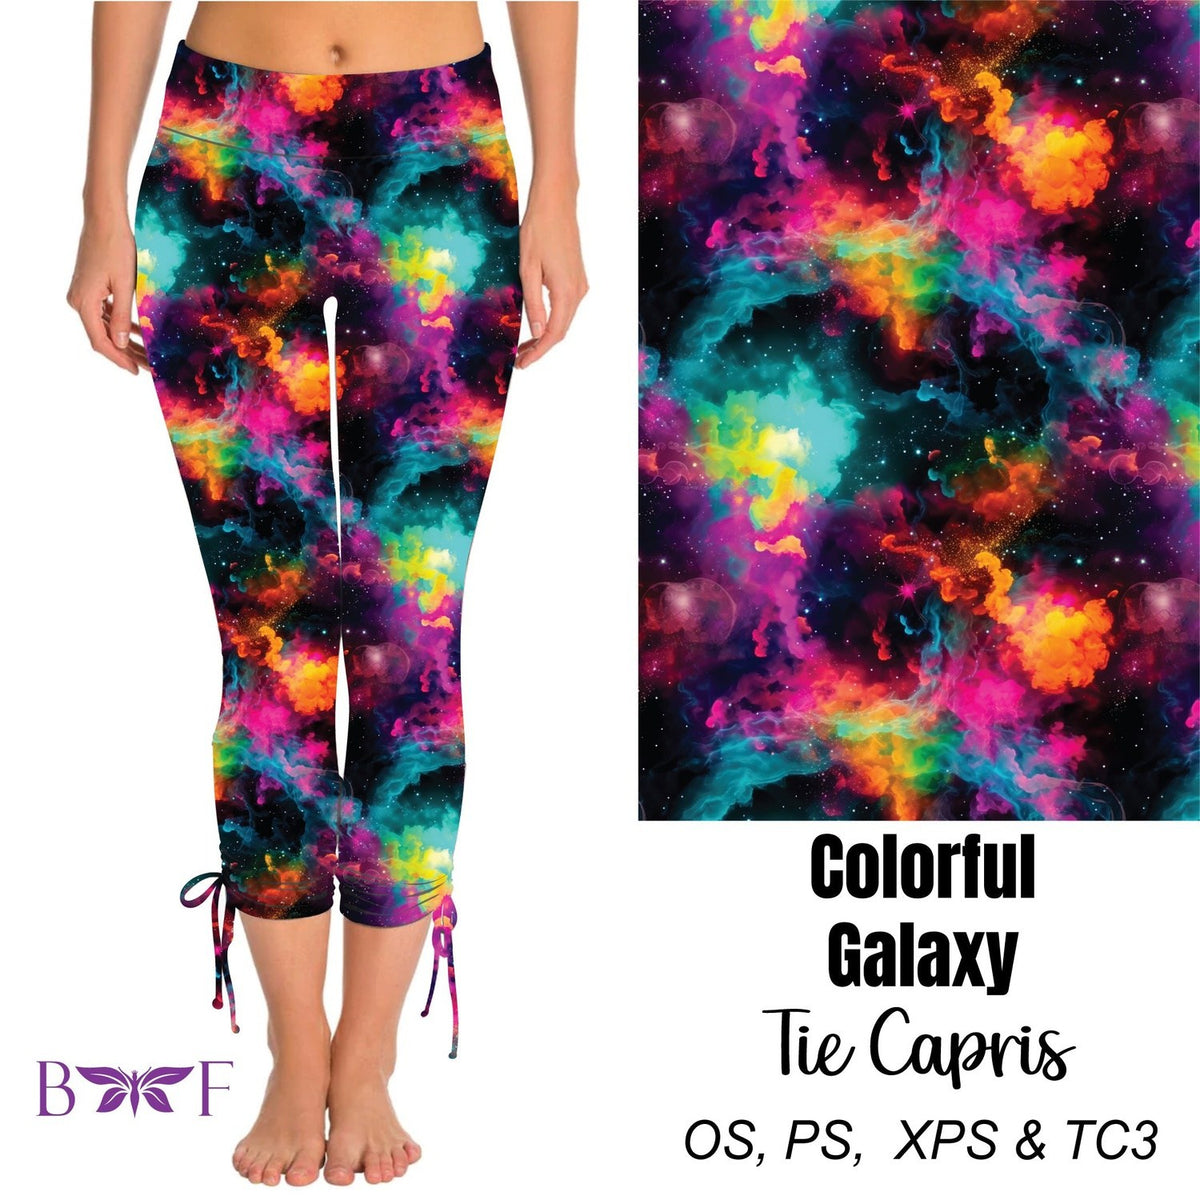 Colorful Galaxy Side Tie Capris